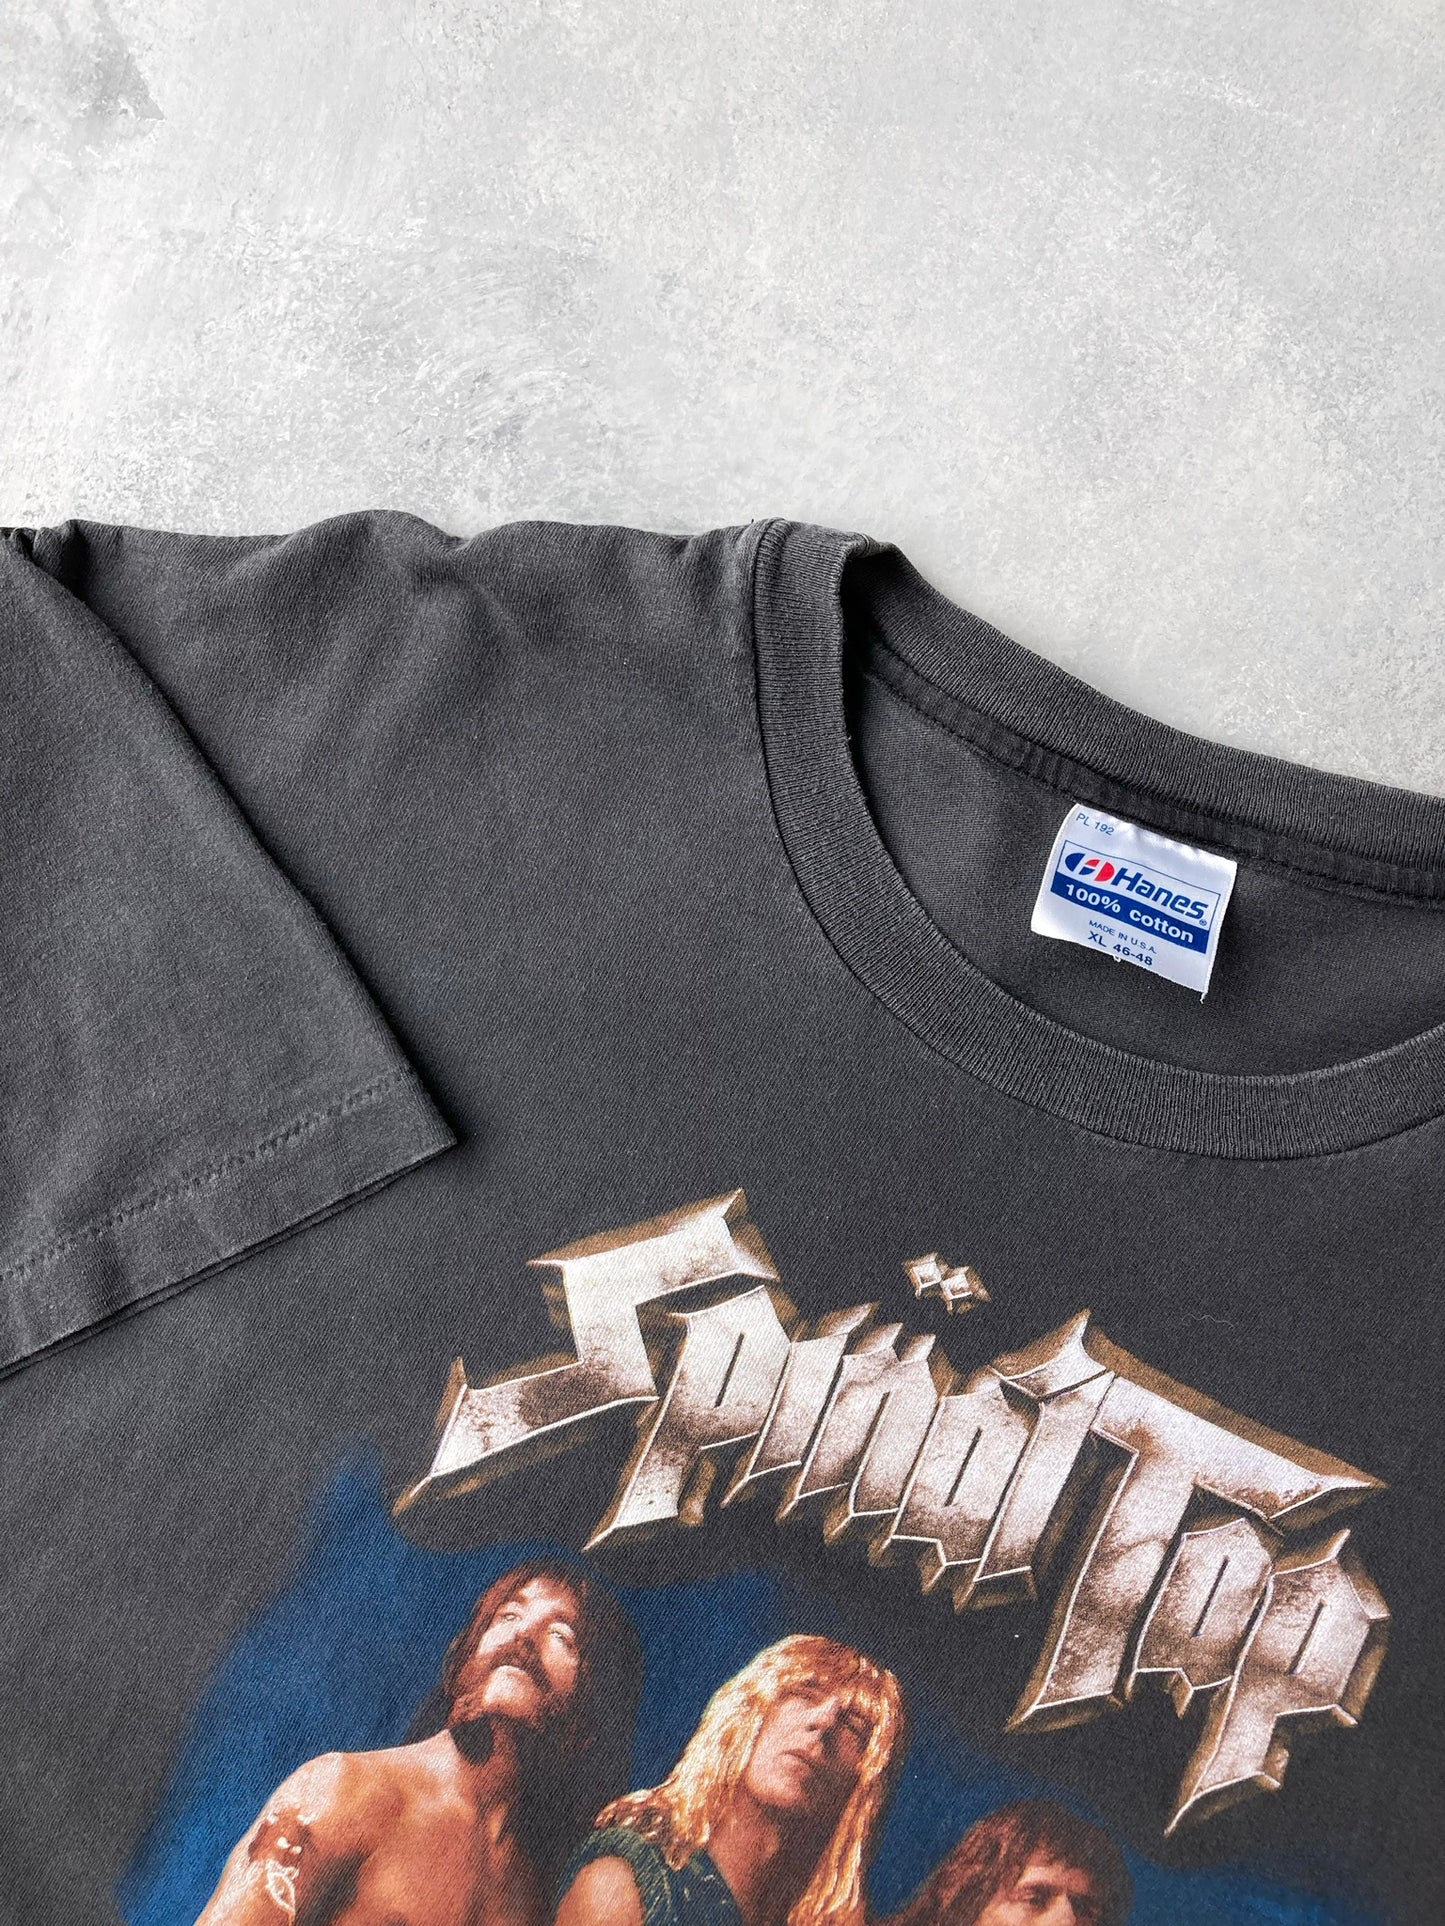 Spinal Tap T-Shirt '92 - XL